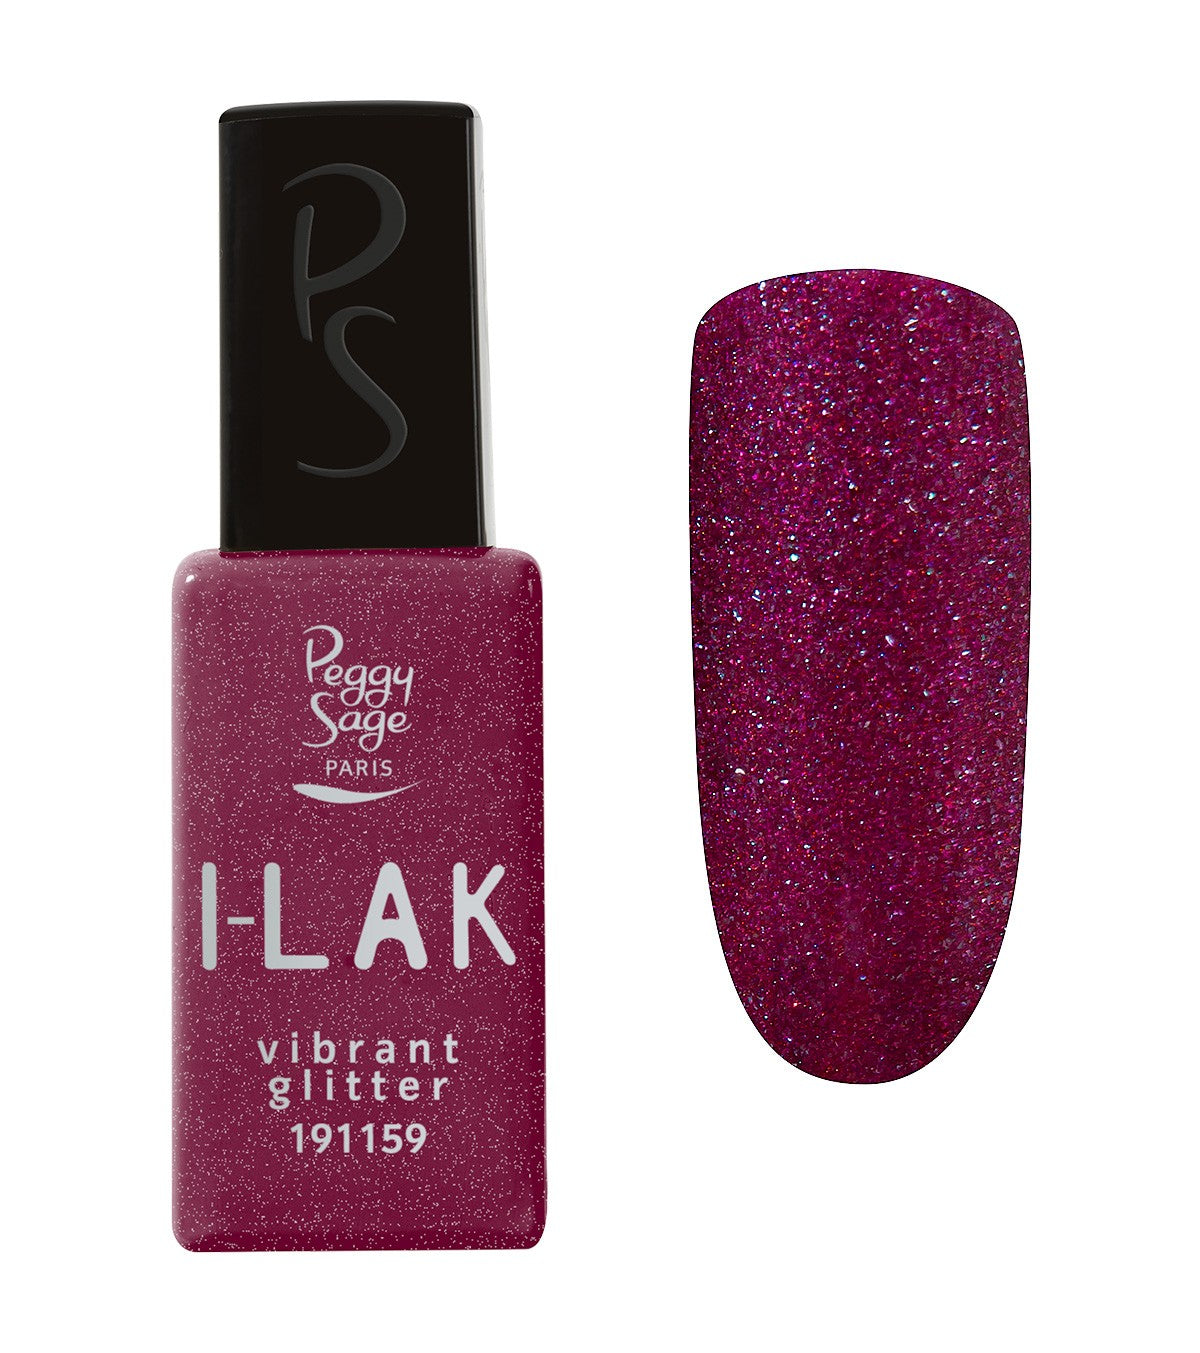 I-LAK Vibrant Glitter Ref 191159